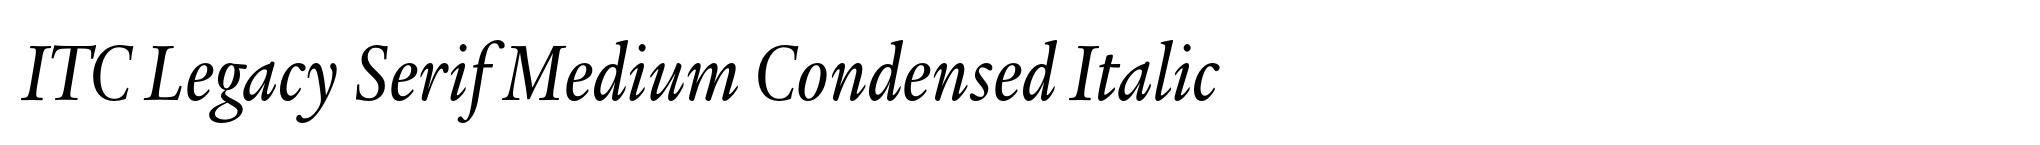 ITC Legacy Serif Medium Condensed Italic image